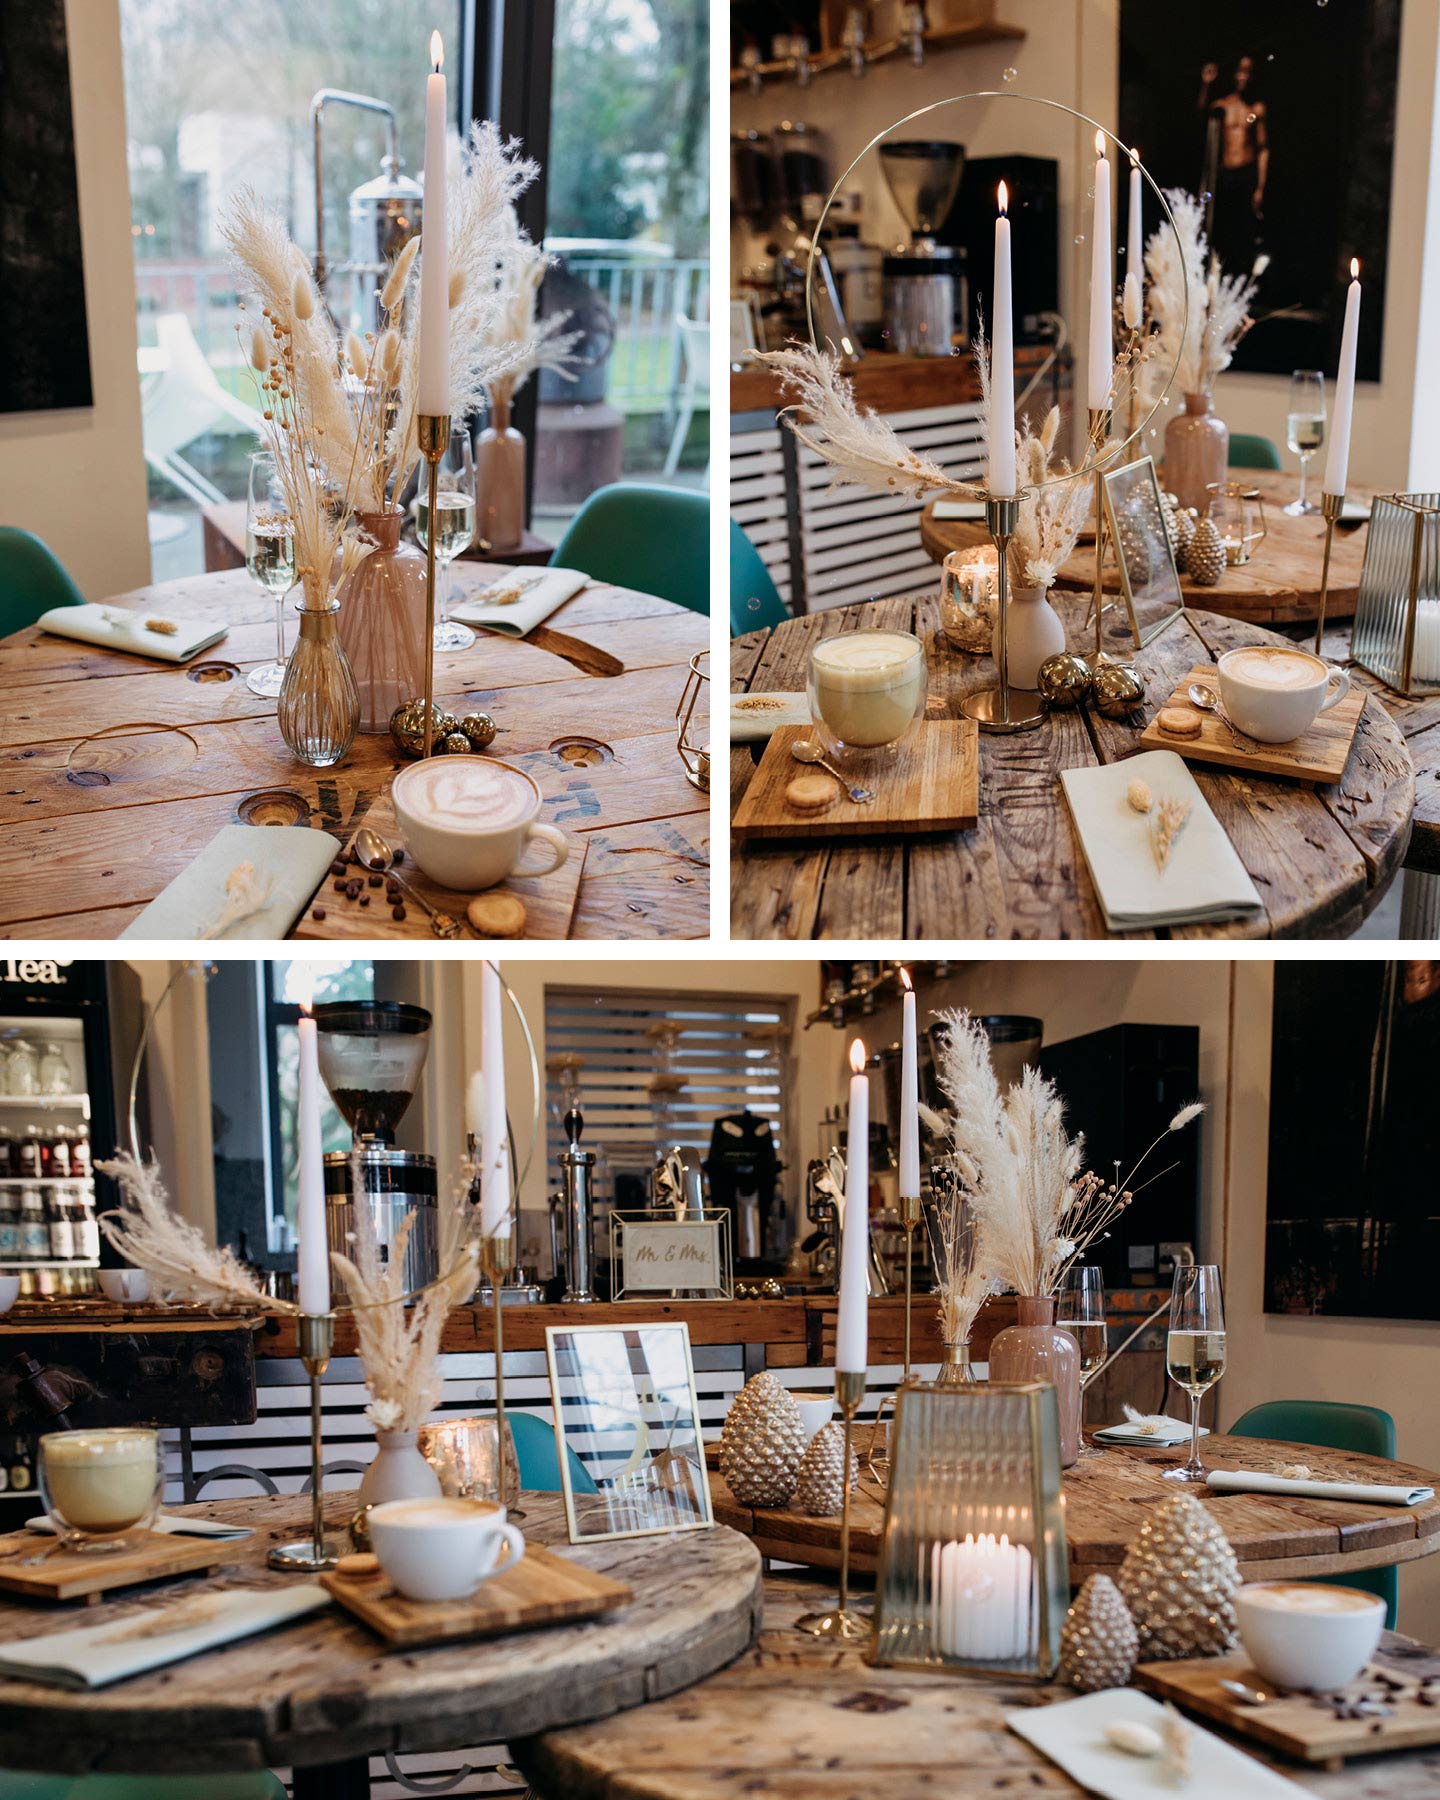 Hochzeitstafel in Kaffeerösterei ist mit Goldelementen, Trockenblumen und weißen Kerzen dekoriert.